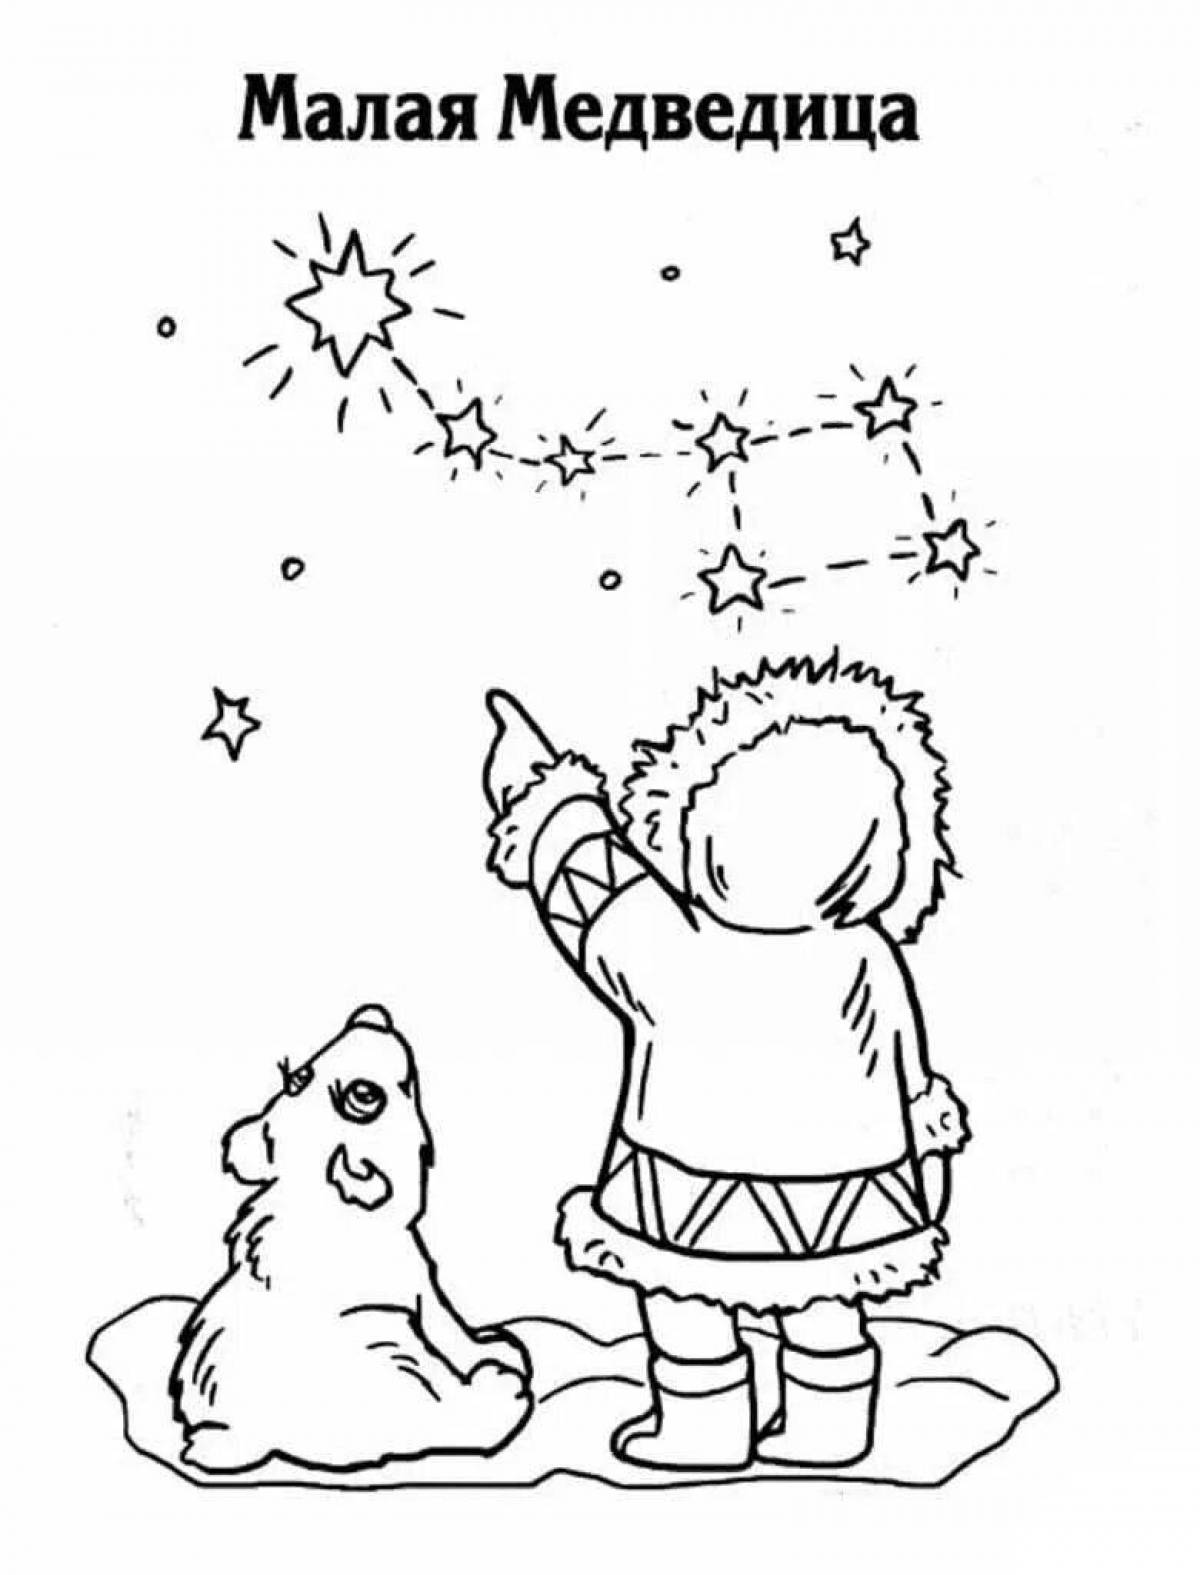 Раскраска созвездия. Созвездие медведицы большой и малой раскраска. Раскраска Созвездие большая Медведица. Раскраска большая Медведица Созвездие для детей. Раскраска созвездия для детей.